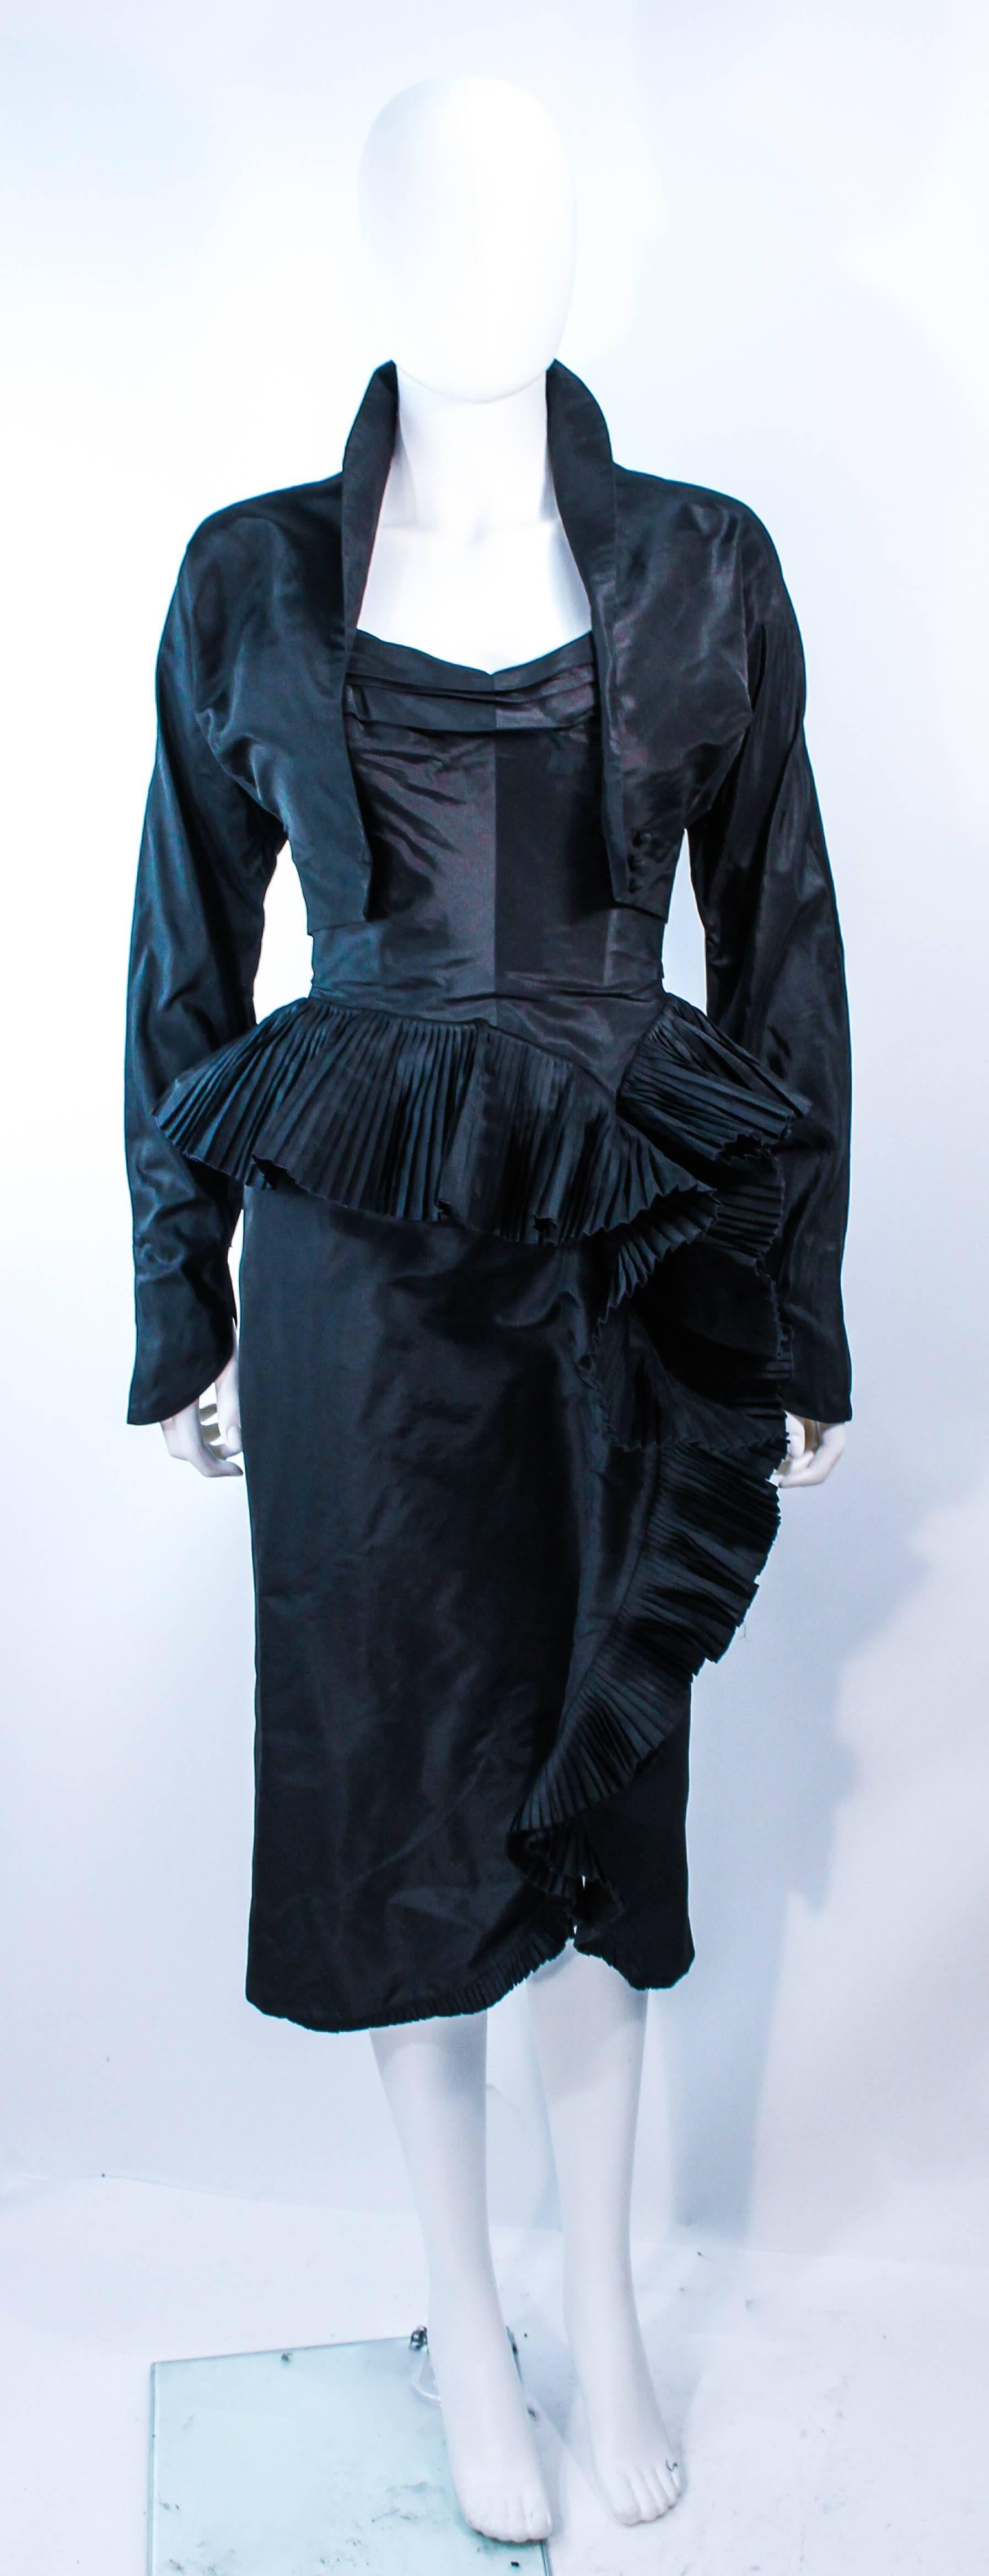 Cet ensemble Irene est composé de soie noire. Cette robe de cocktail sans bretelles présente un buste plissé avec des volants en cascade drapés sur les côtés, avec une armature intérieure. La veste présente un style court avec des boutons sur le